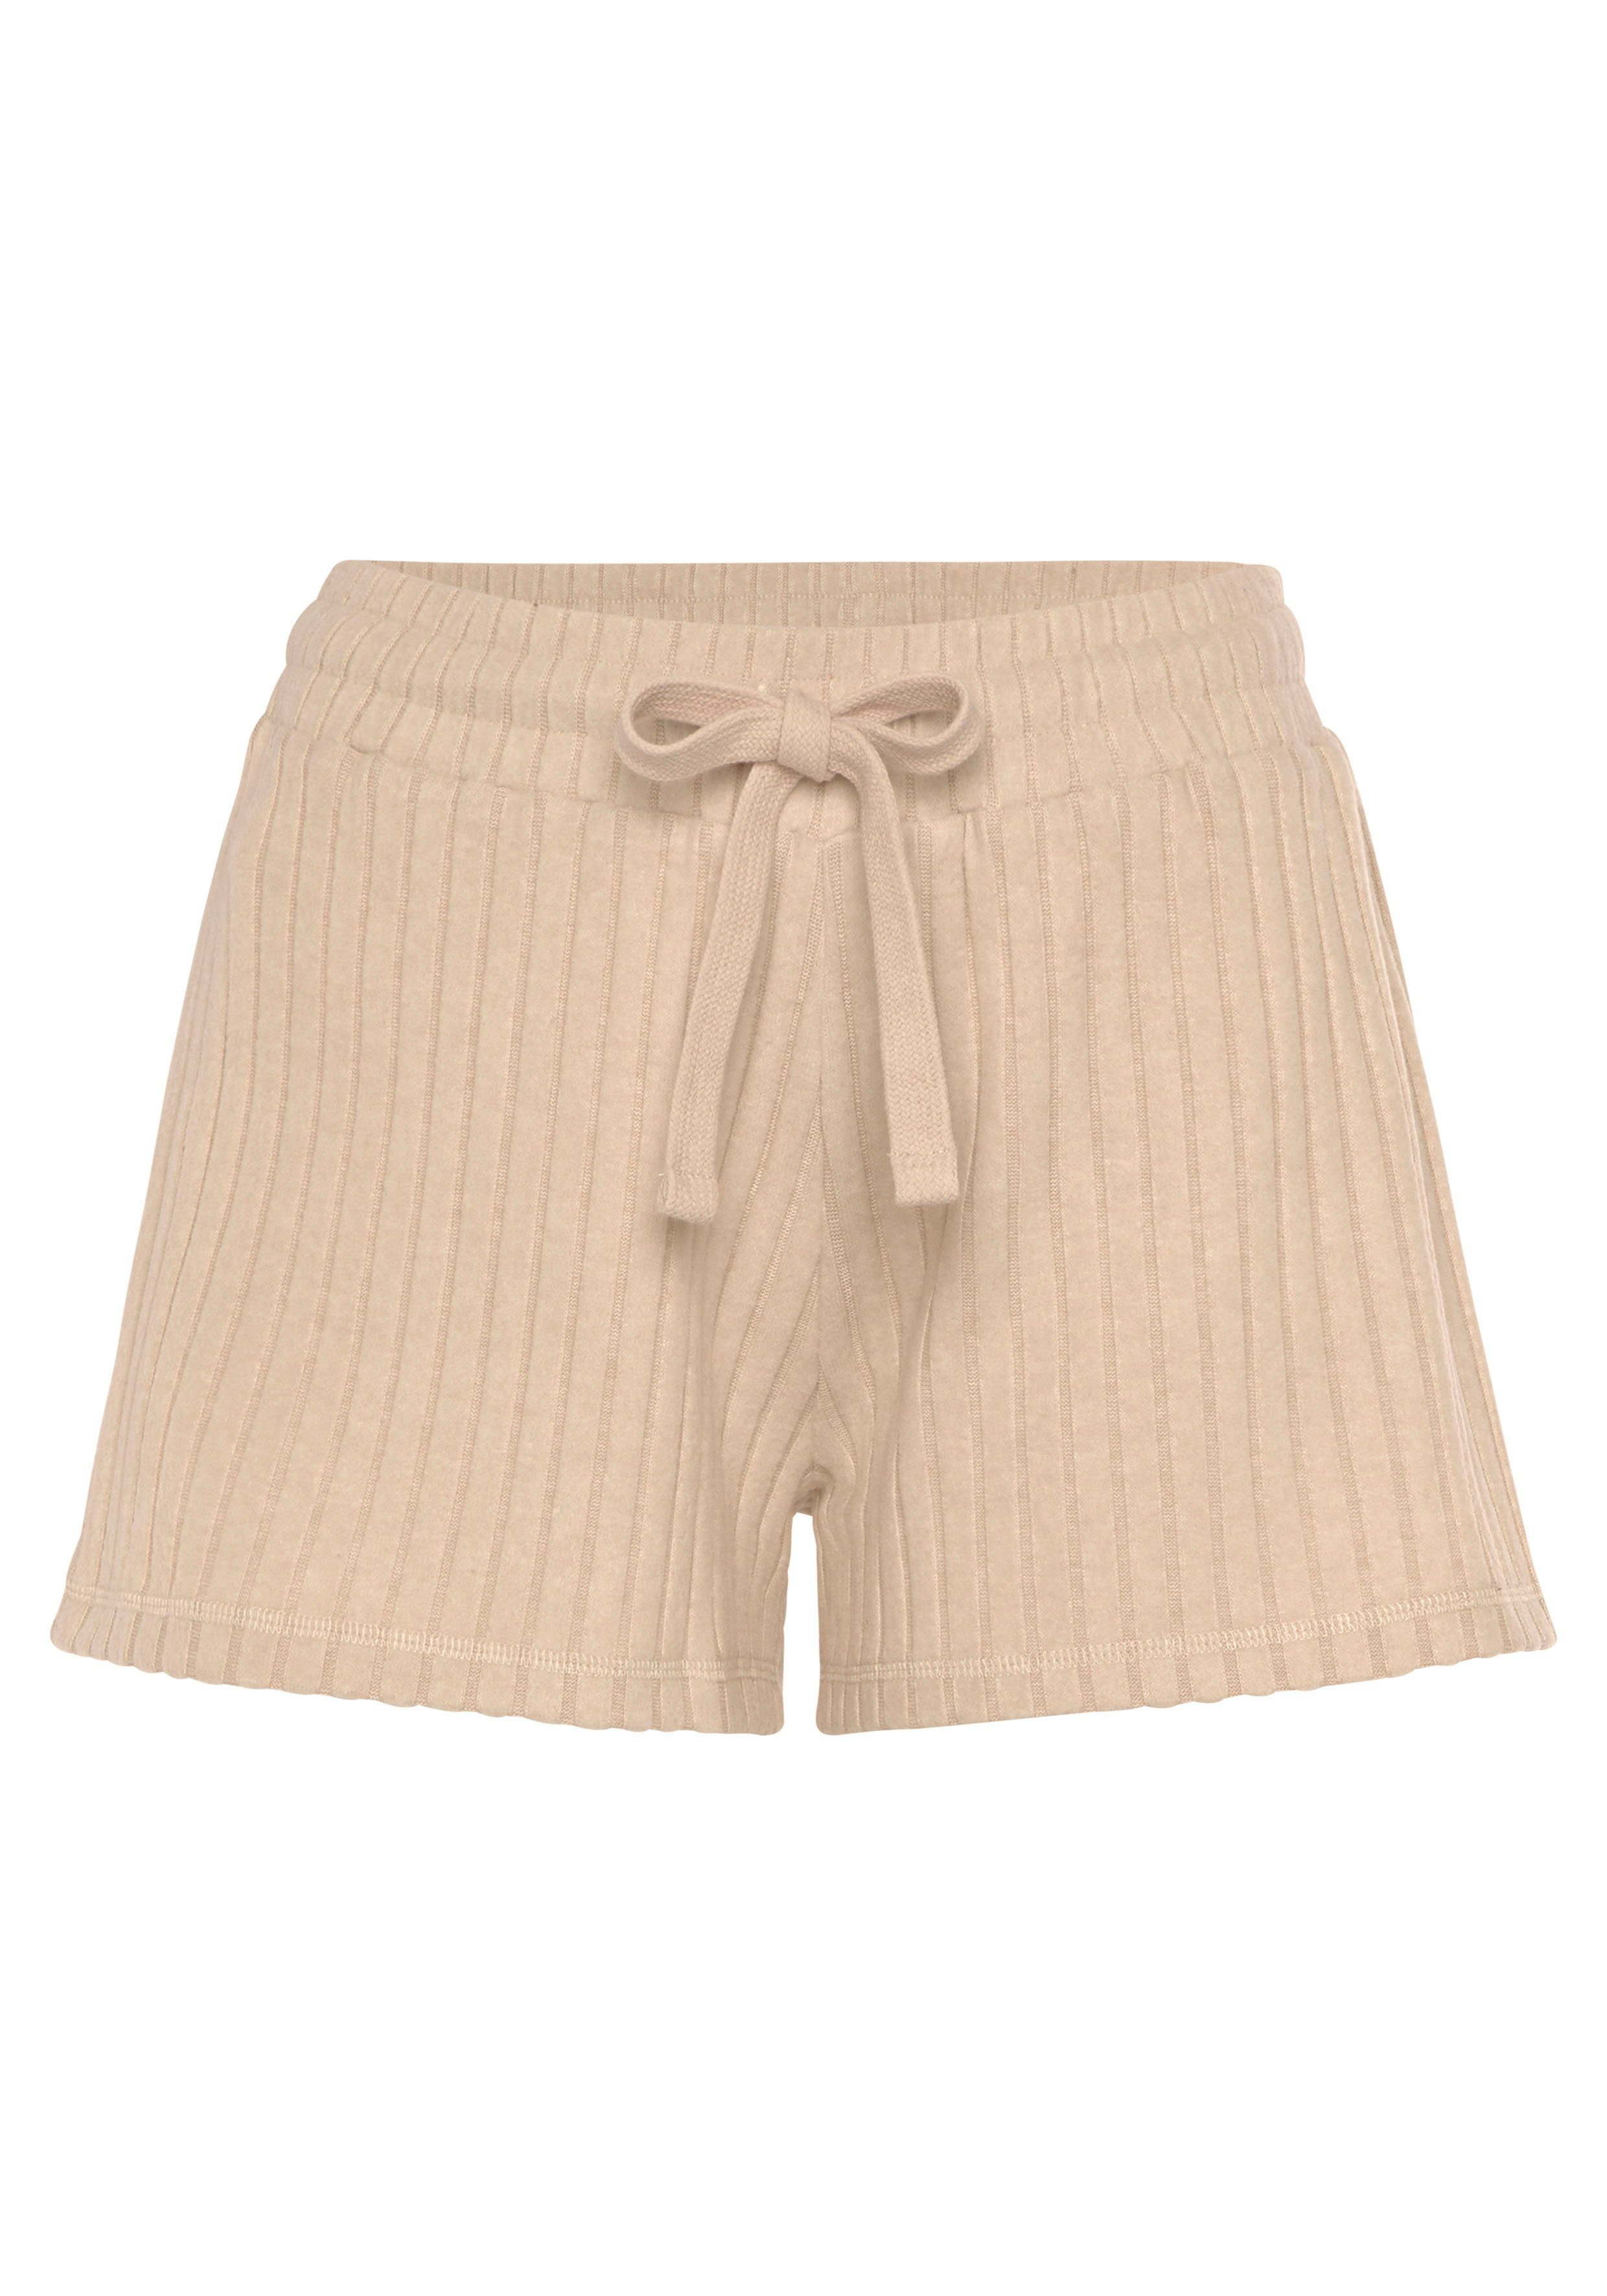 mit meliert -Loungeshorts Shorts in sand-meliert Ripp-Qualität LASCANA Bindeband weicher